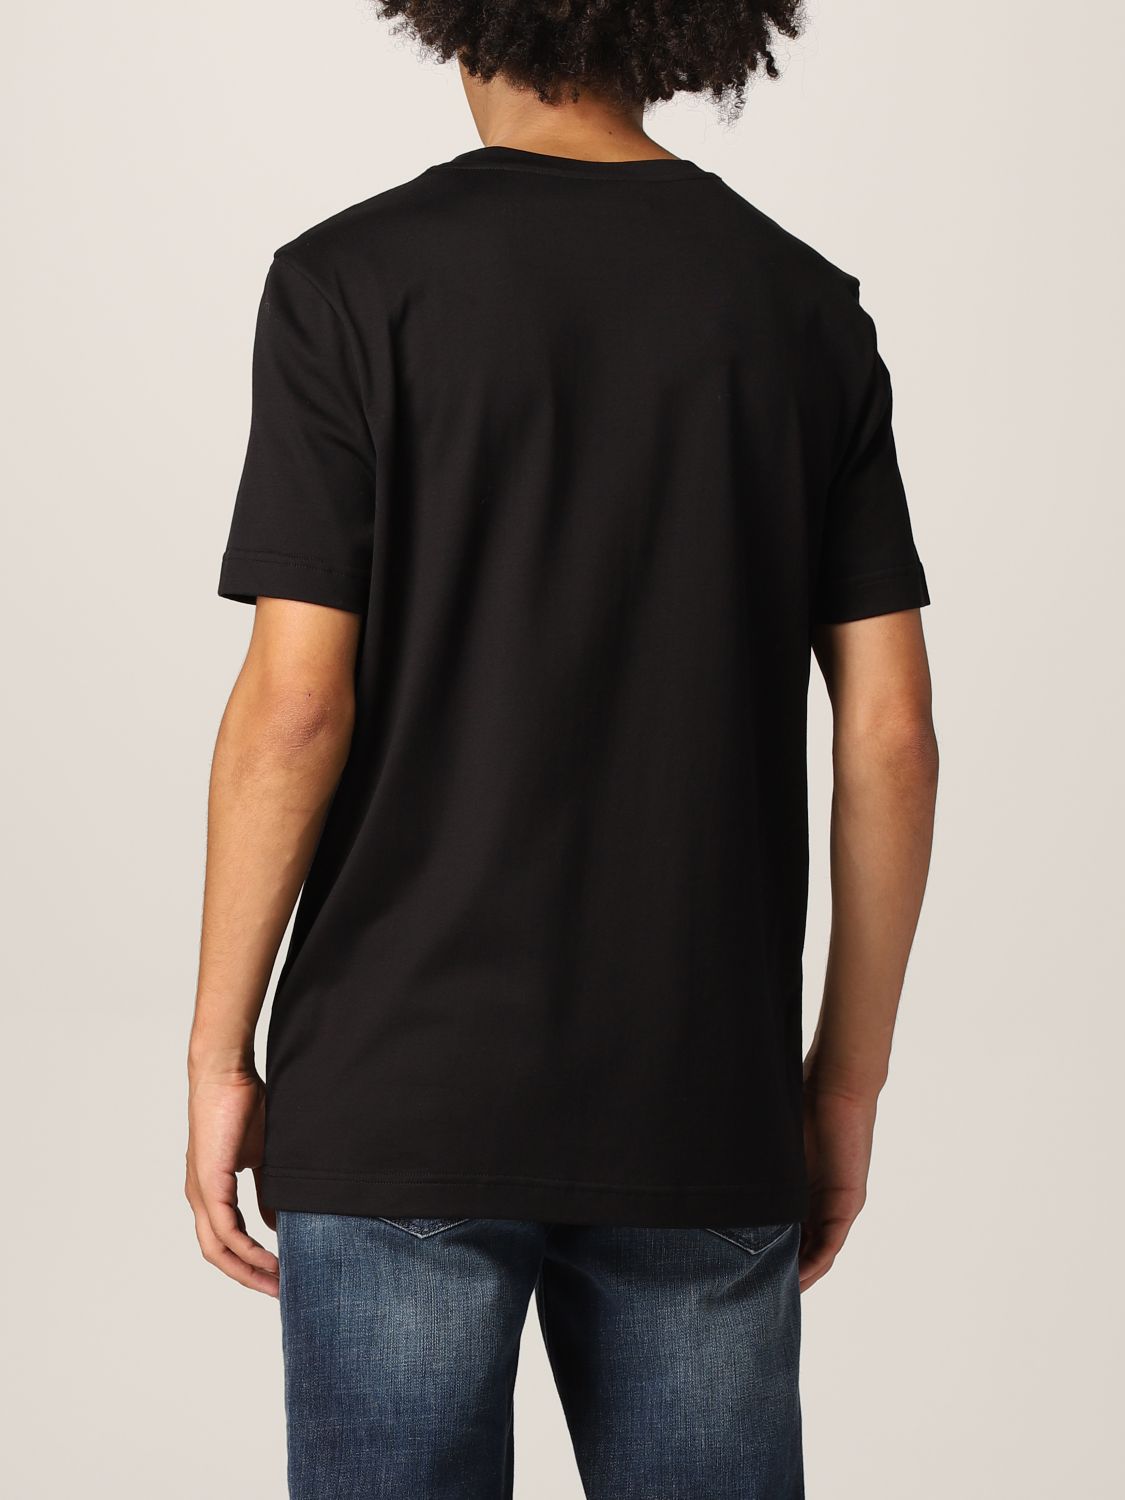 T-Shirt Knt: T-shirt herren Knt schwarz 2